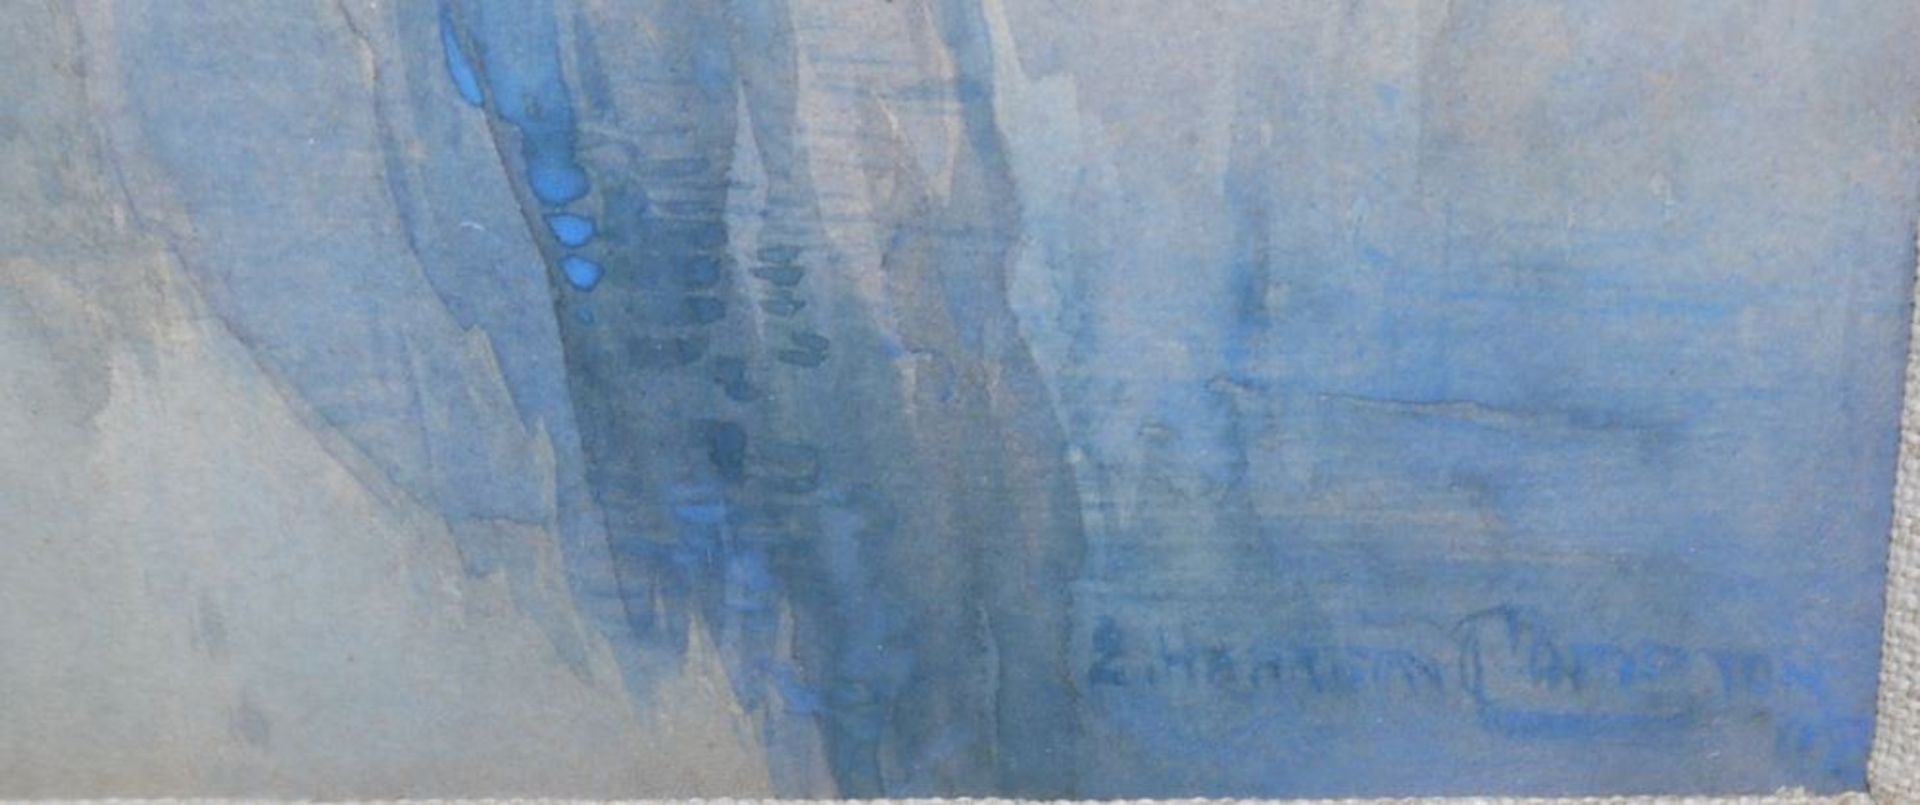 Edward Harrison Compton, Auf dem Königssee, signiertes Aquarell von (19)02, gerahmt - Image 2 of 3